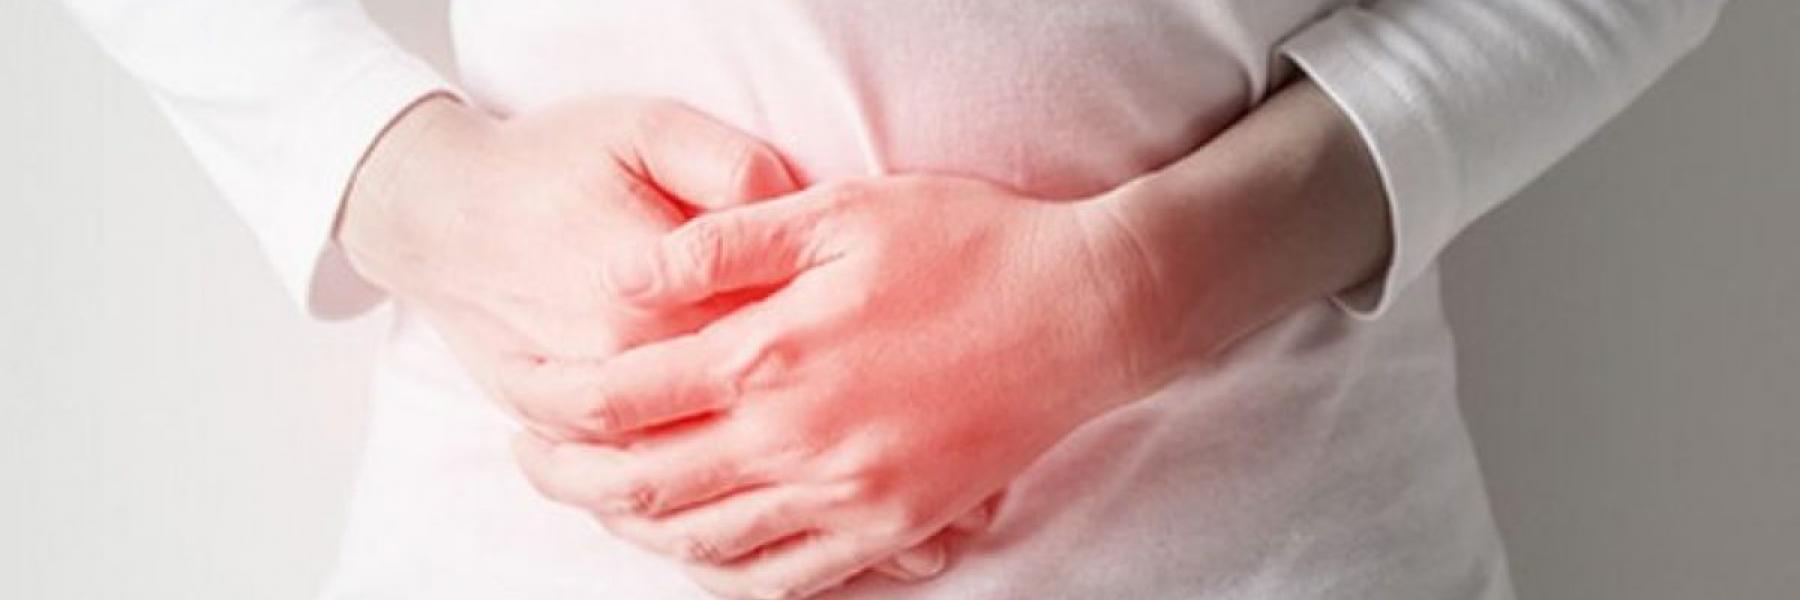 7 أعراض شائعة لالتهاب المعدة والأمعاء.. تعرف عليها